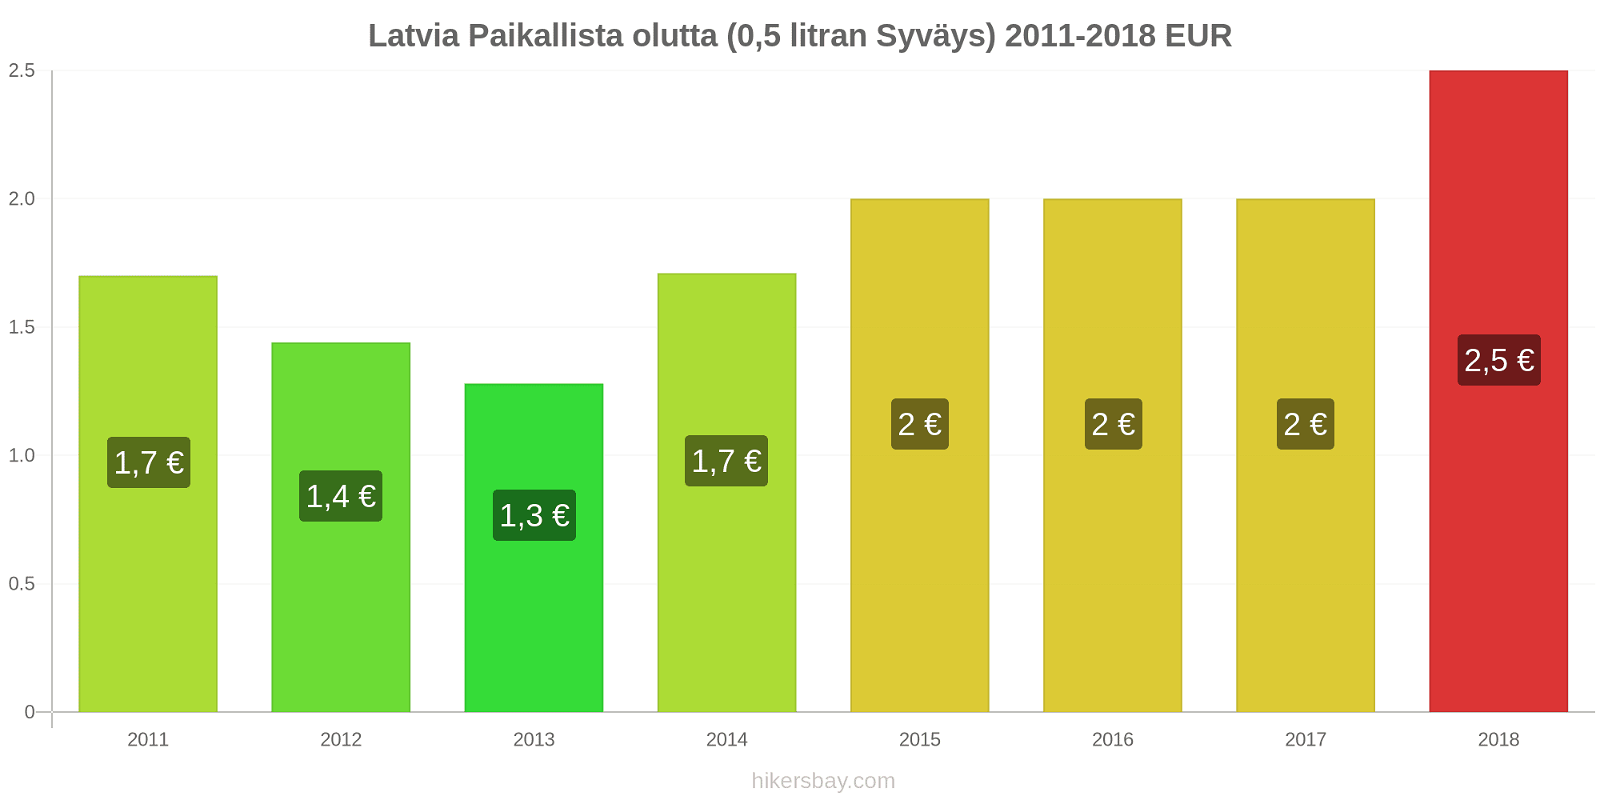 Latvia hintojen muutokset Paikallista olutta (0,5 litran Syväys) hikersbay.com